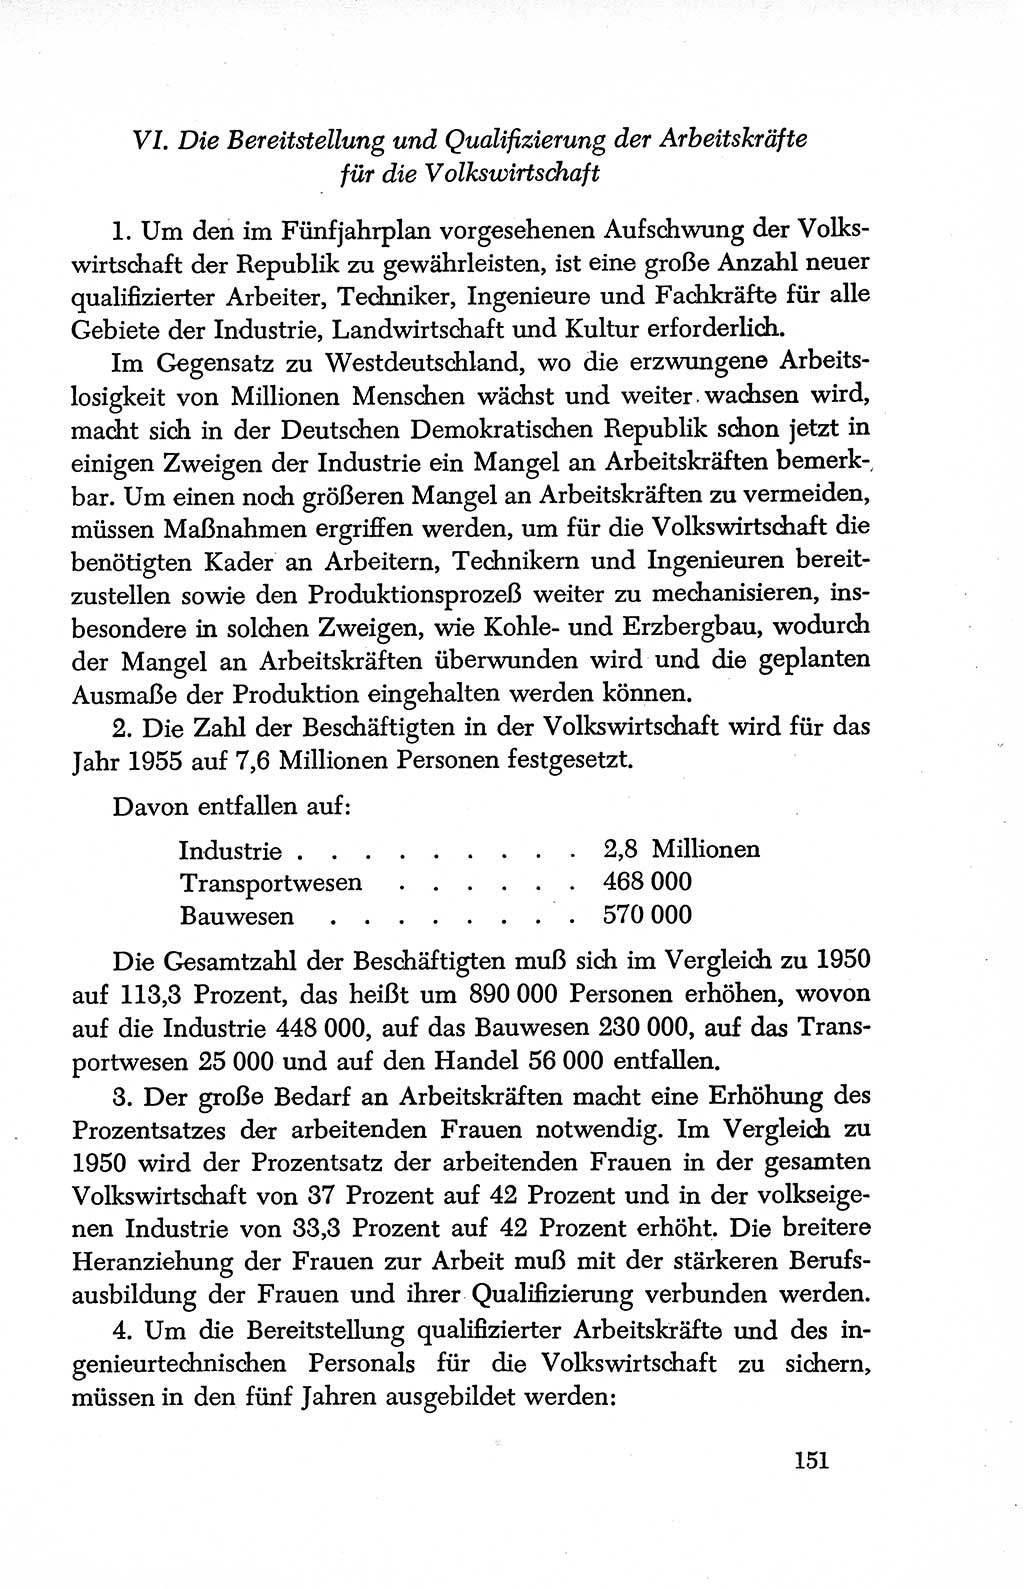 Dokumente der Sozialistischen Einheitspartei Deutschlands (SED) [Deutsche Demokratische Republik (DDR)] 1950-1952, Seite 151 (Dok. SED DDR 1950-1952, S. 151)